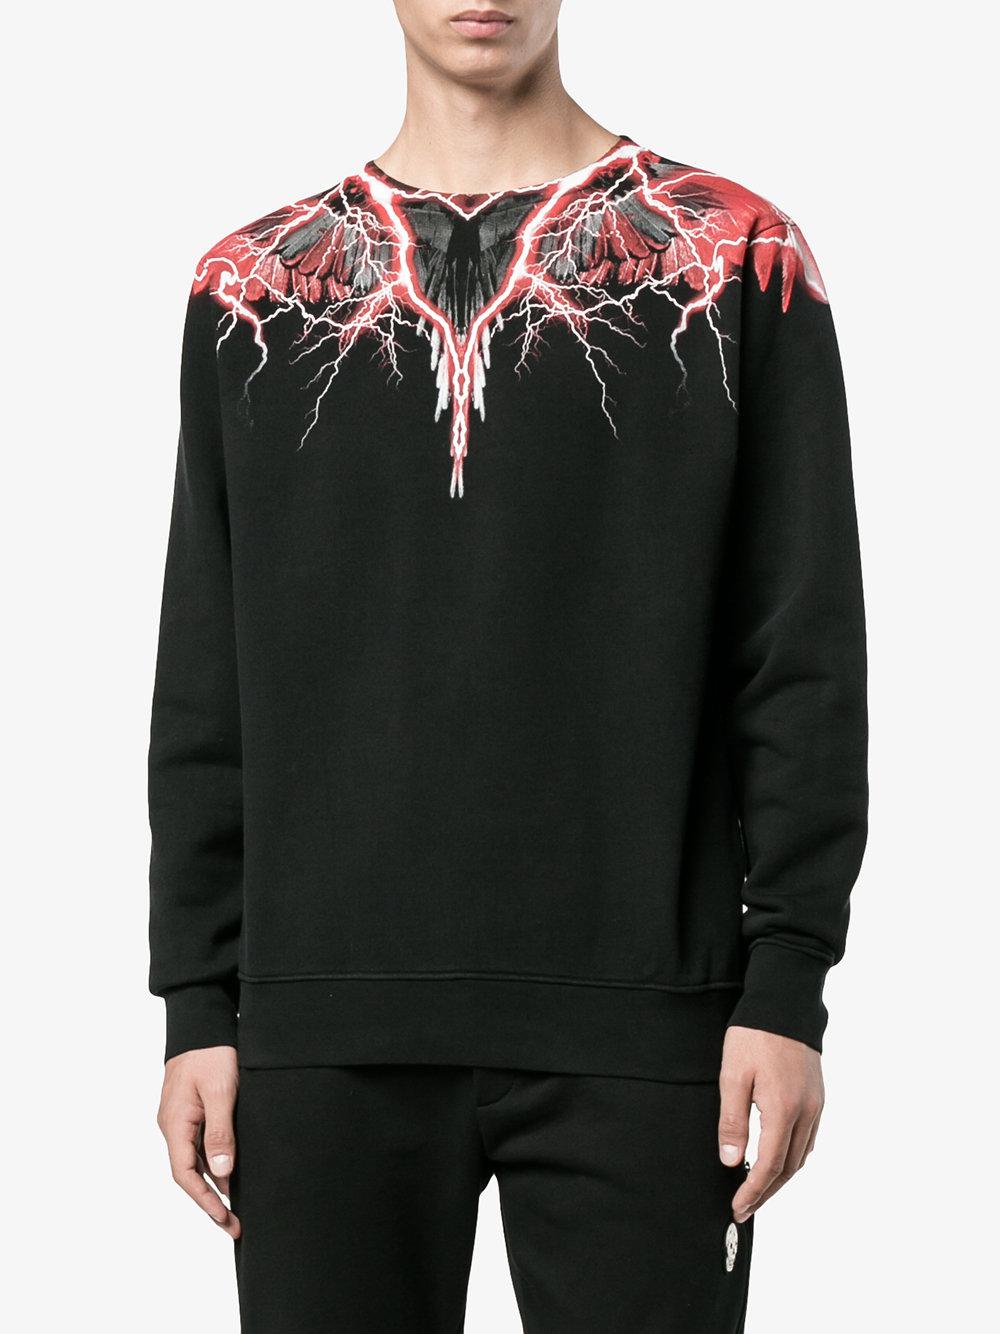 Marcelo Burlon Red Lightning Print Sweatshirt in Black for Men - Lyst